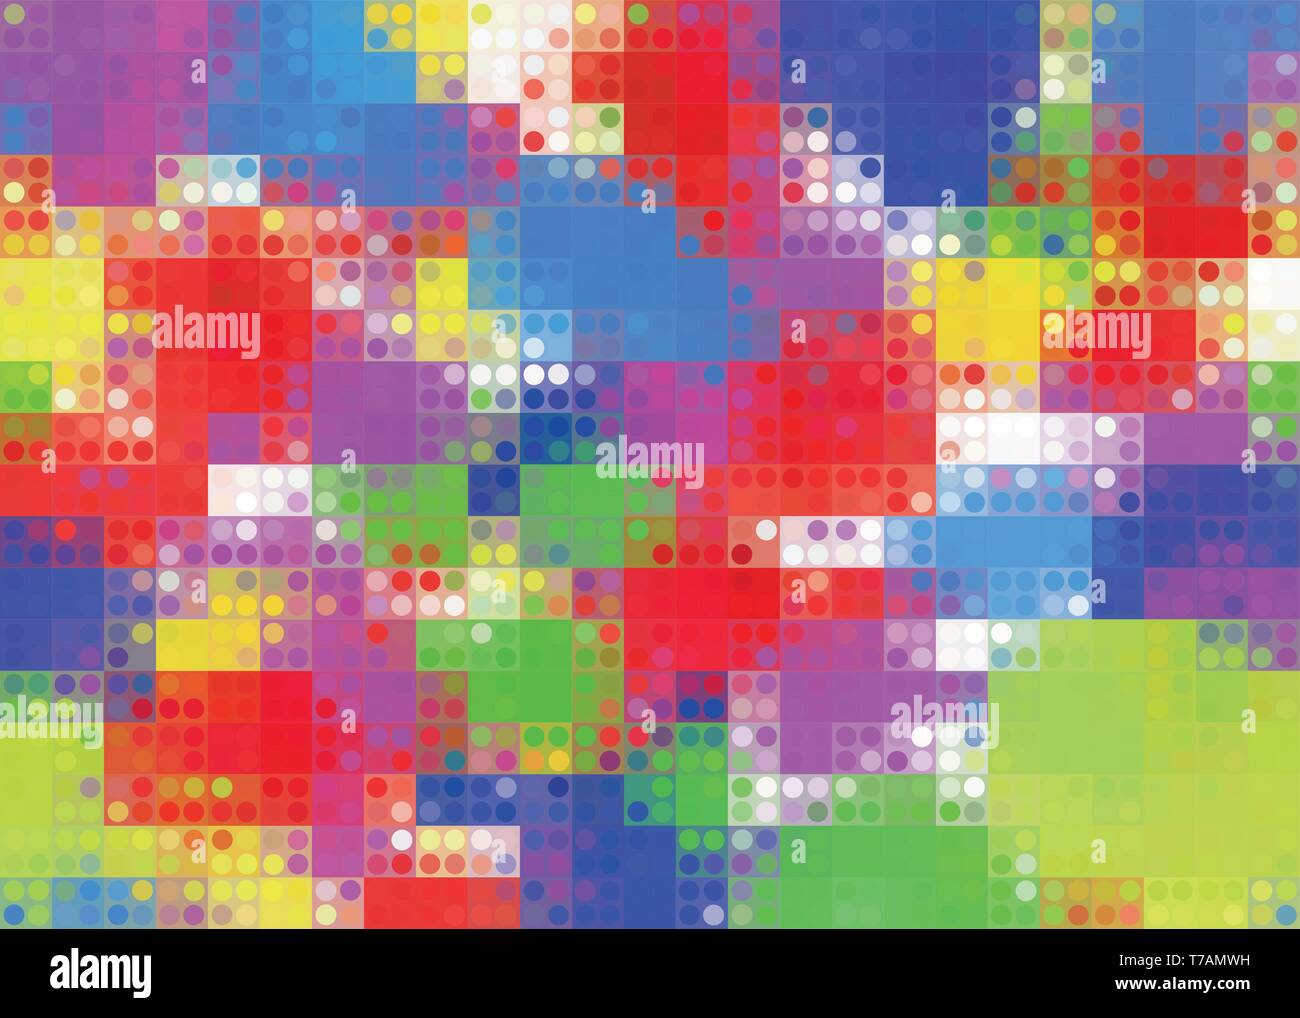 Abstrakte Blume Spektrum Hintergrund Vektor. Hintergrund abstraktes Pixel mehrfarbig mit irisierenden Punkte für ihr Design Stock Vektor